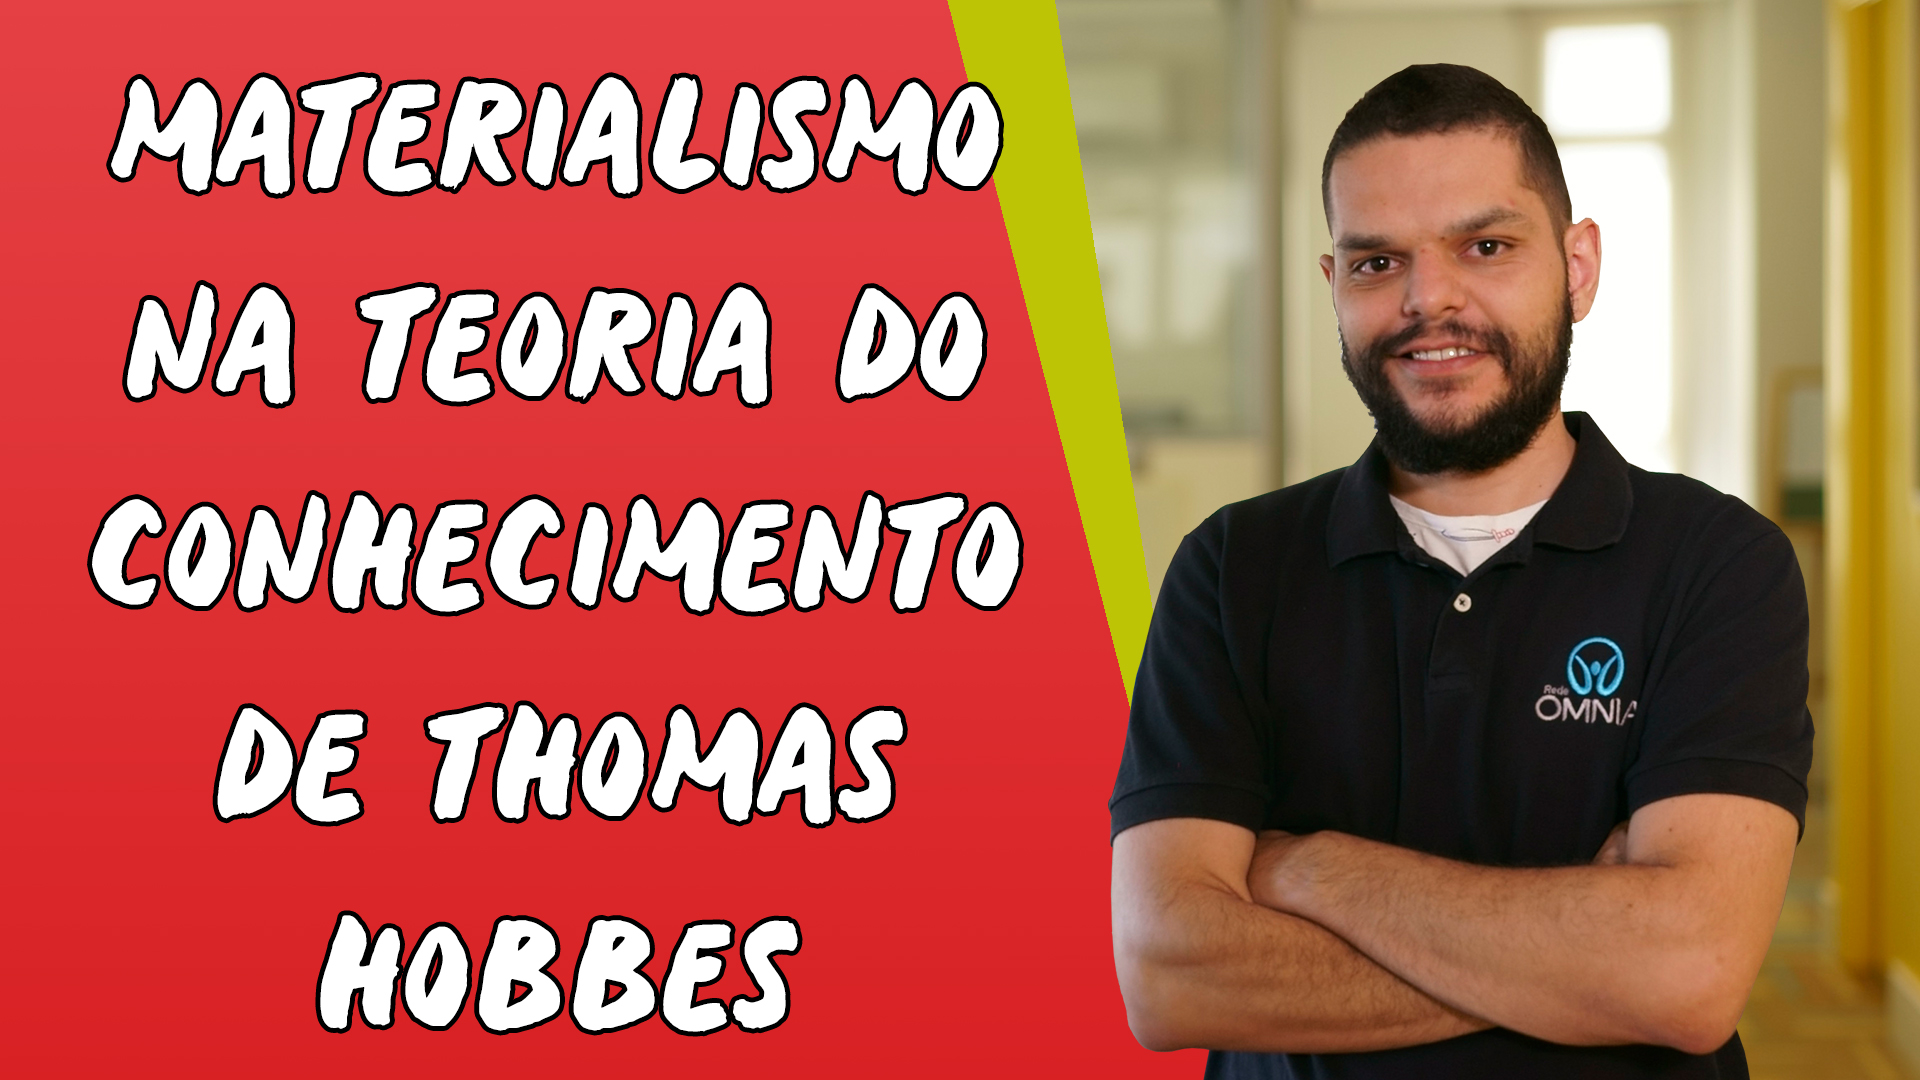 "Materialismo na Teoria do Conhecimento de Thomas Hobbes" escrito sobre fundo vermelho ao lado da imagem do professor